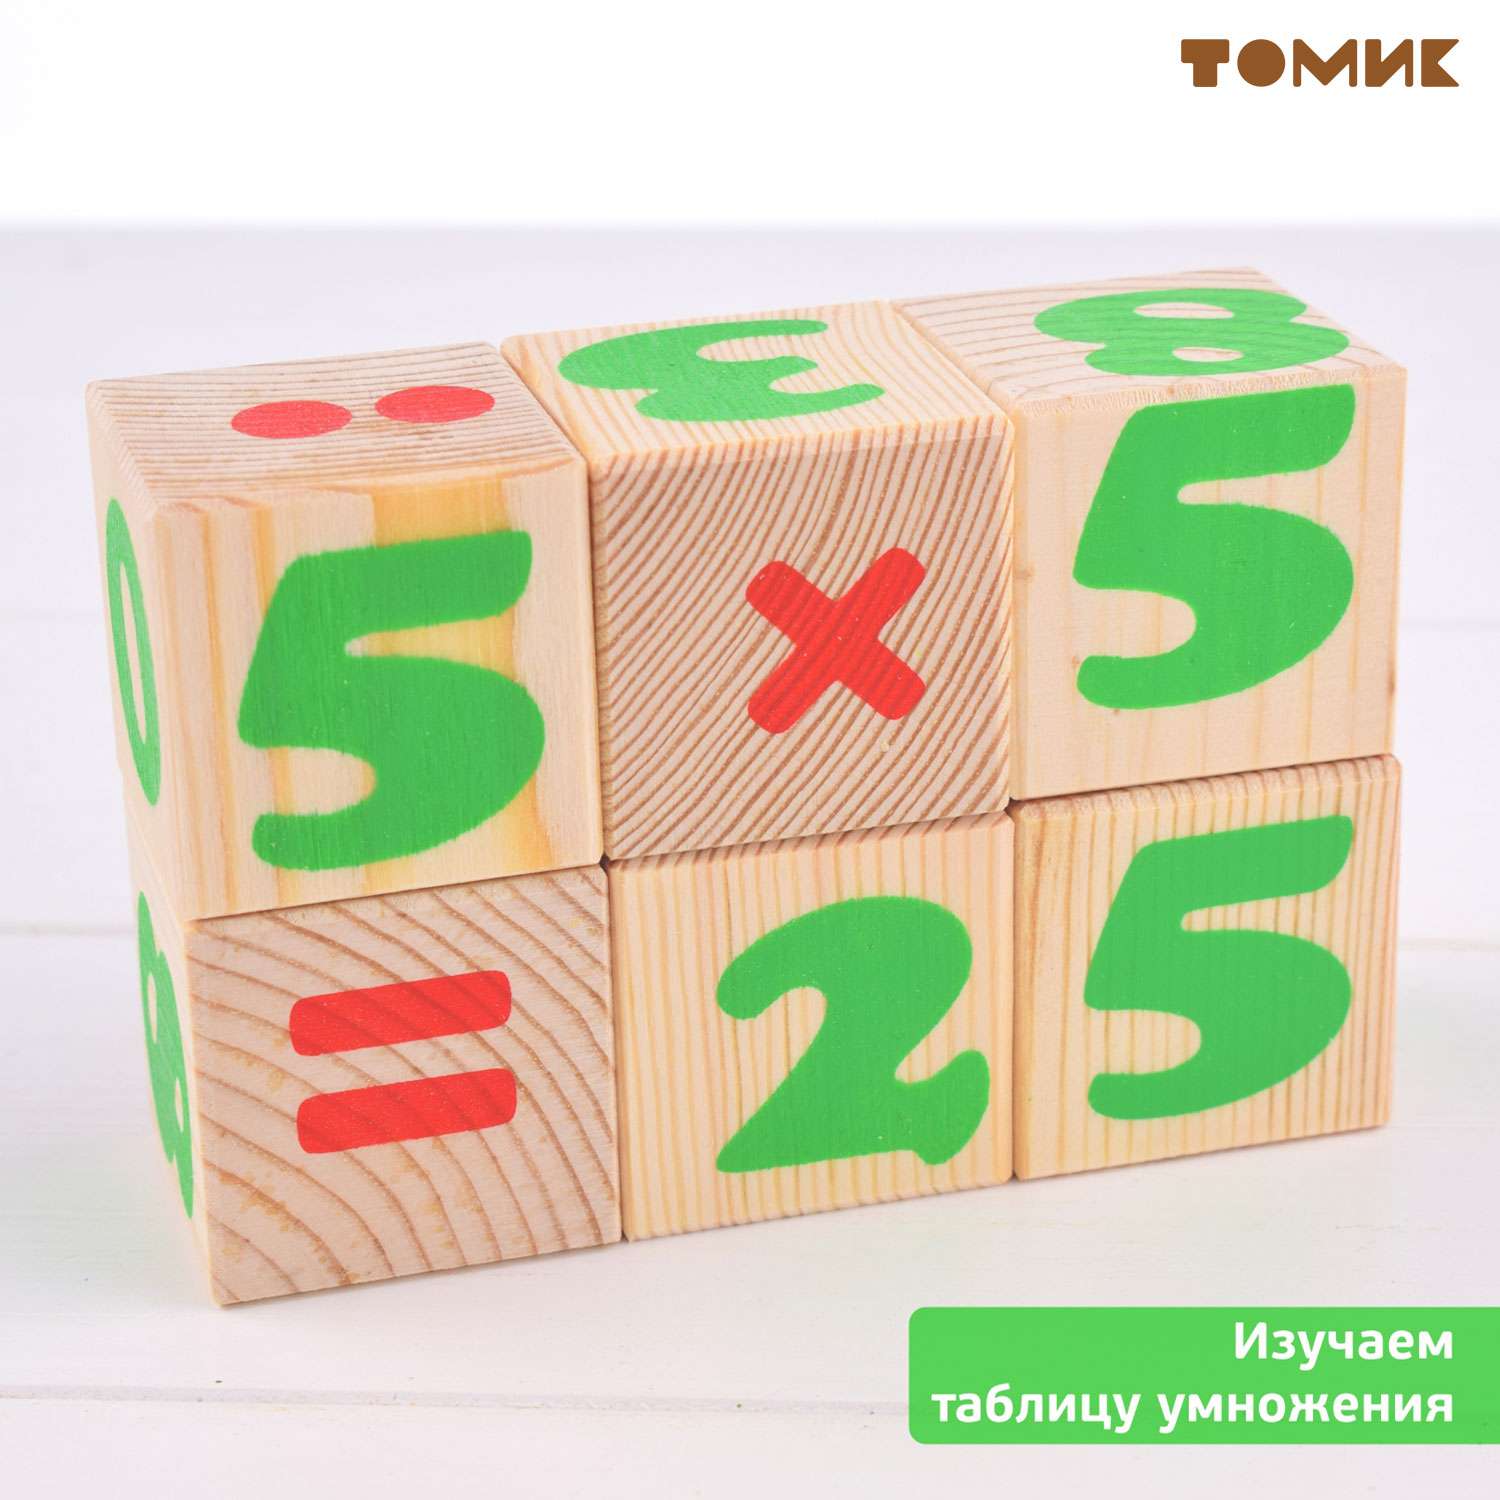 Кубики для детей Томик цифры 12 шт. 1111-3 - фото 7